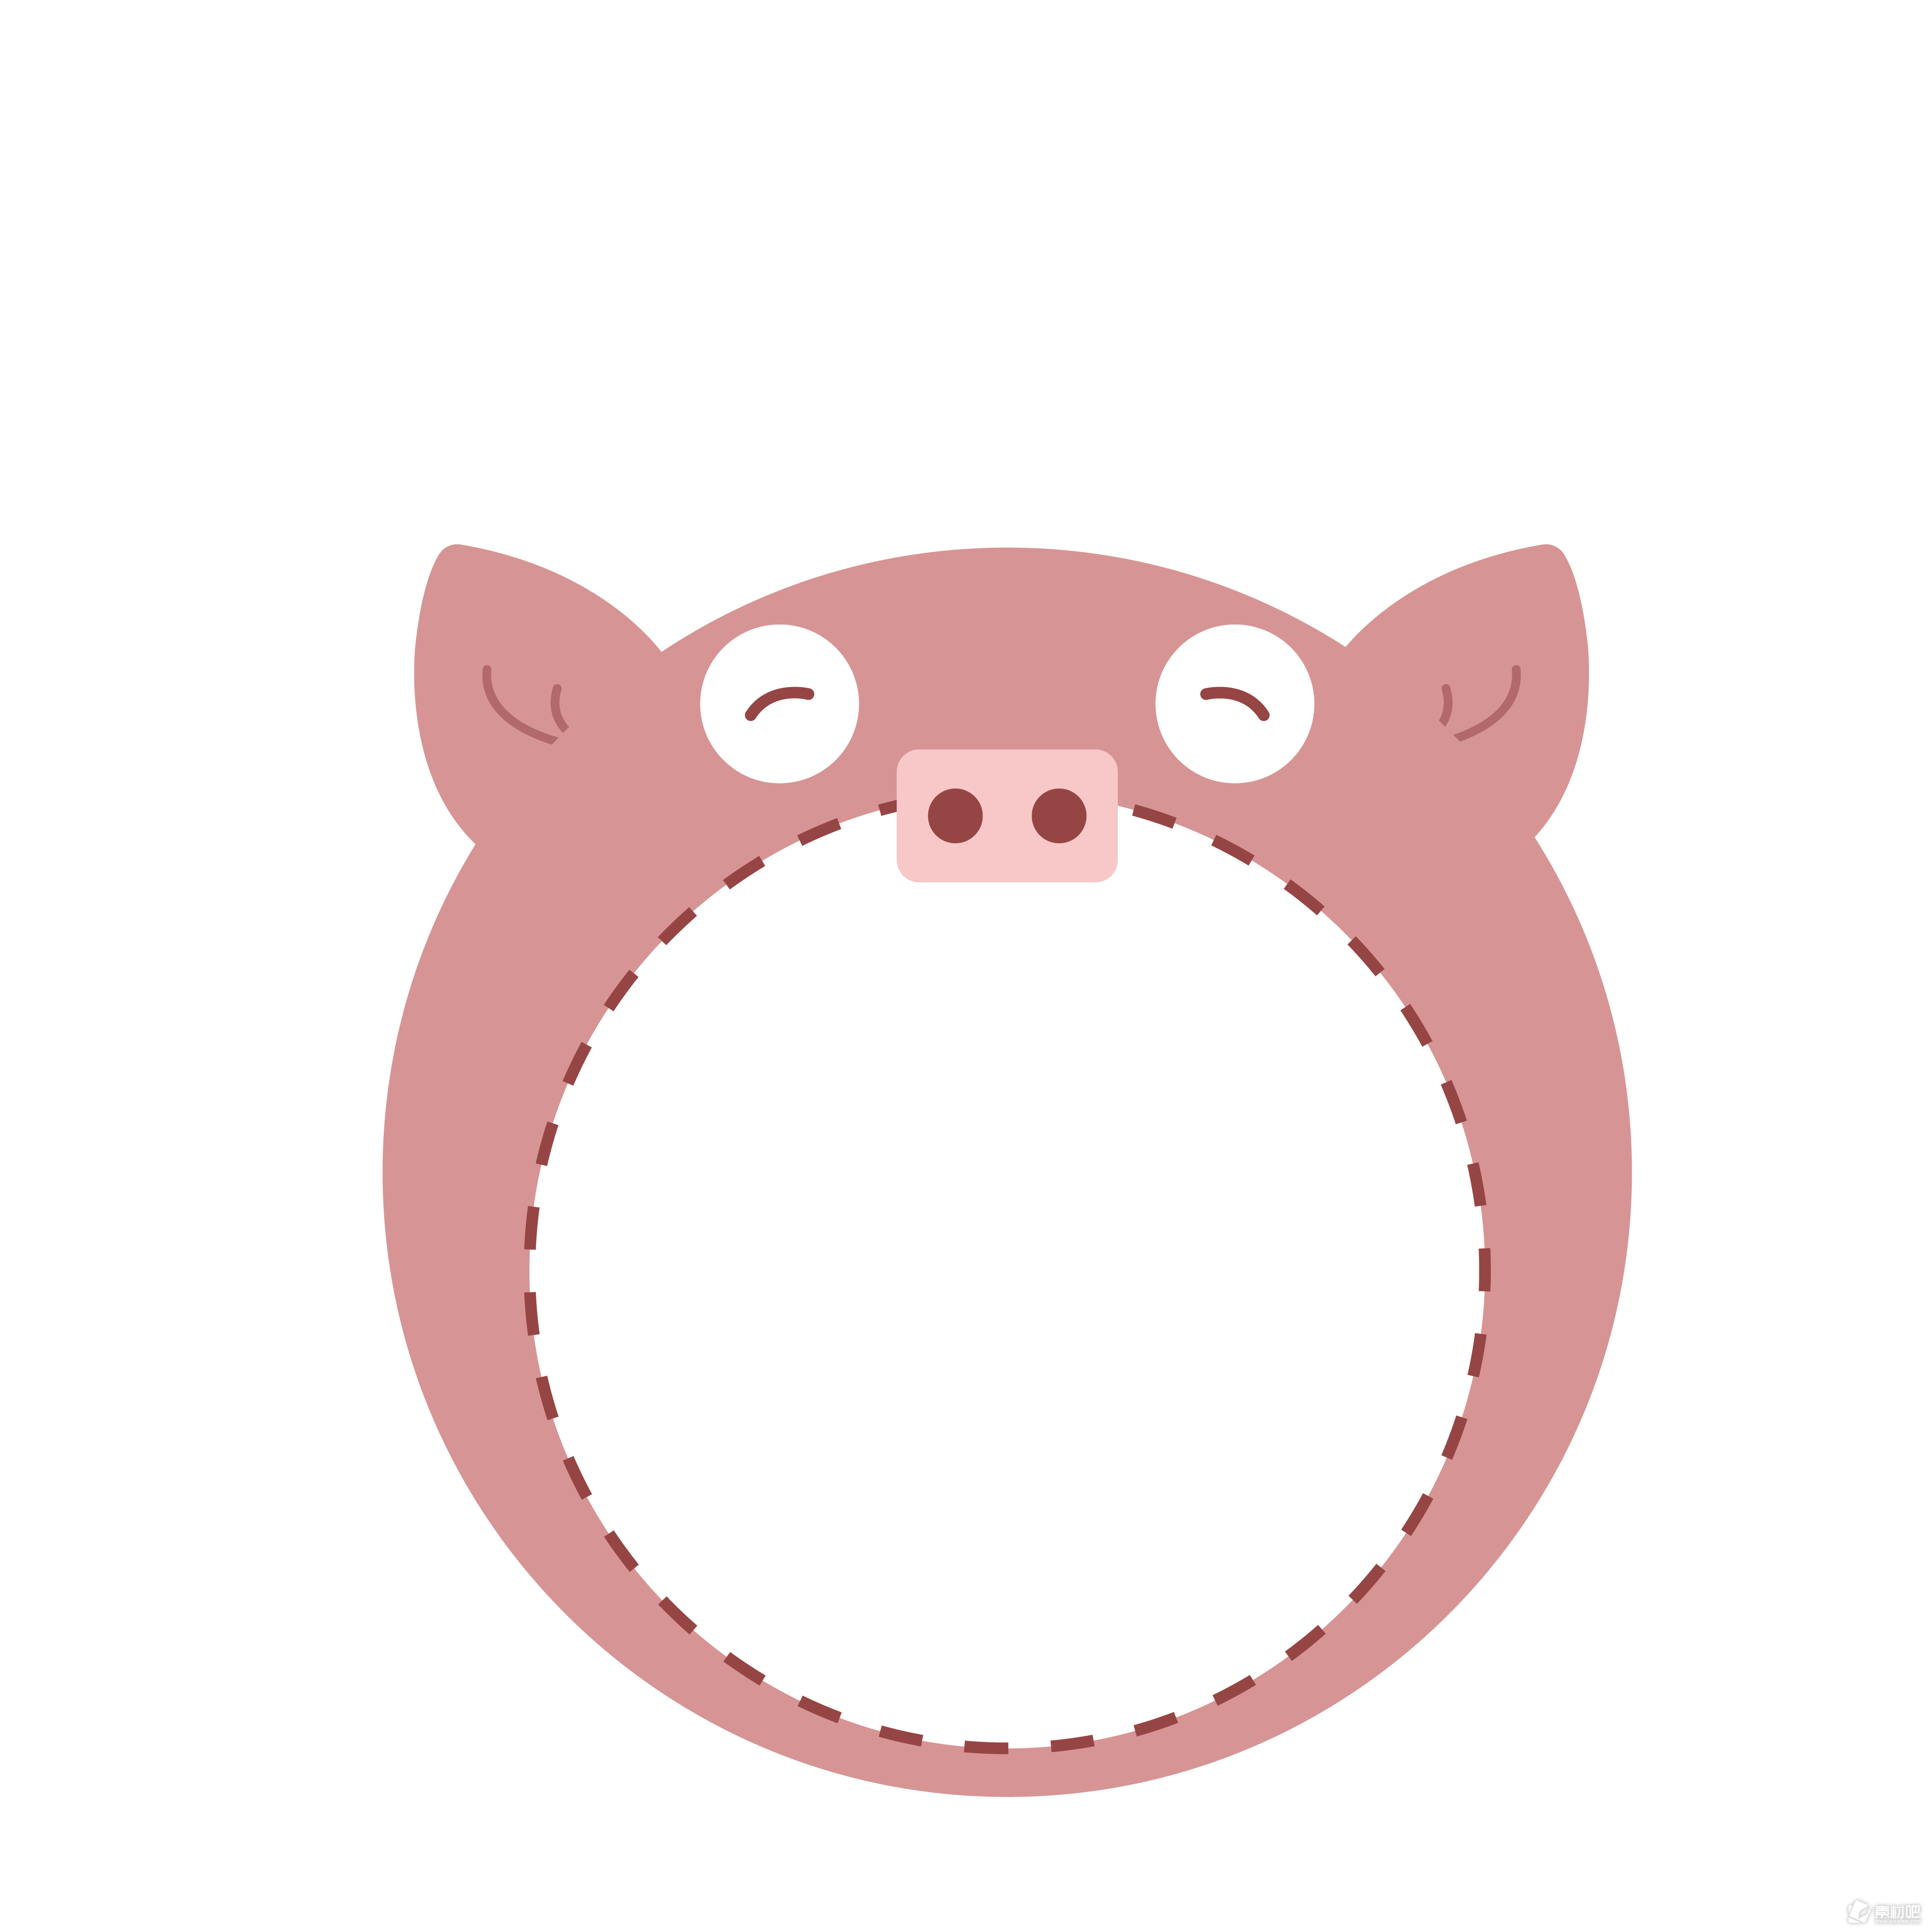 卡通手绘可爱动物猪会话框